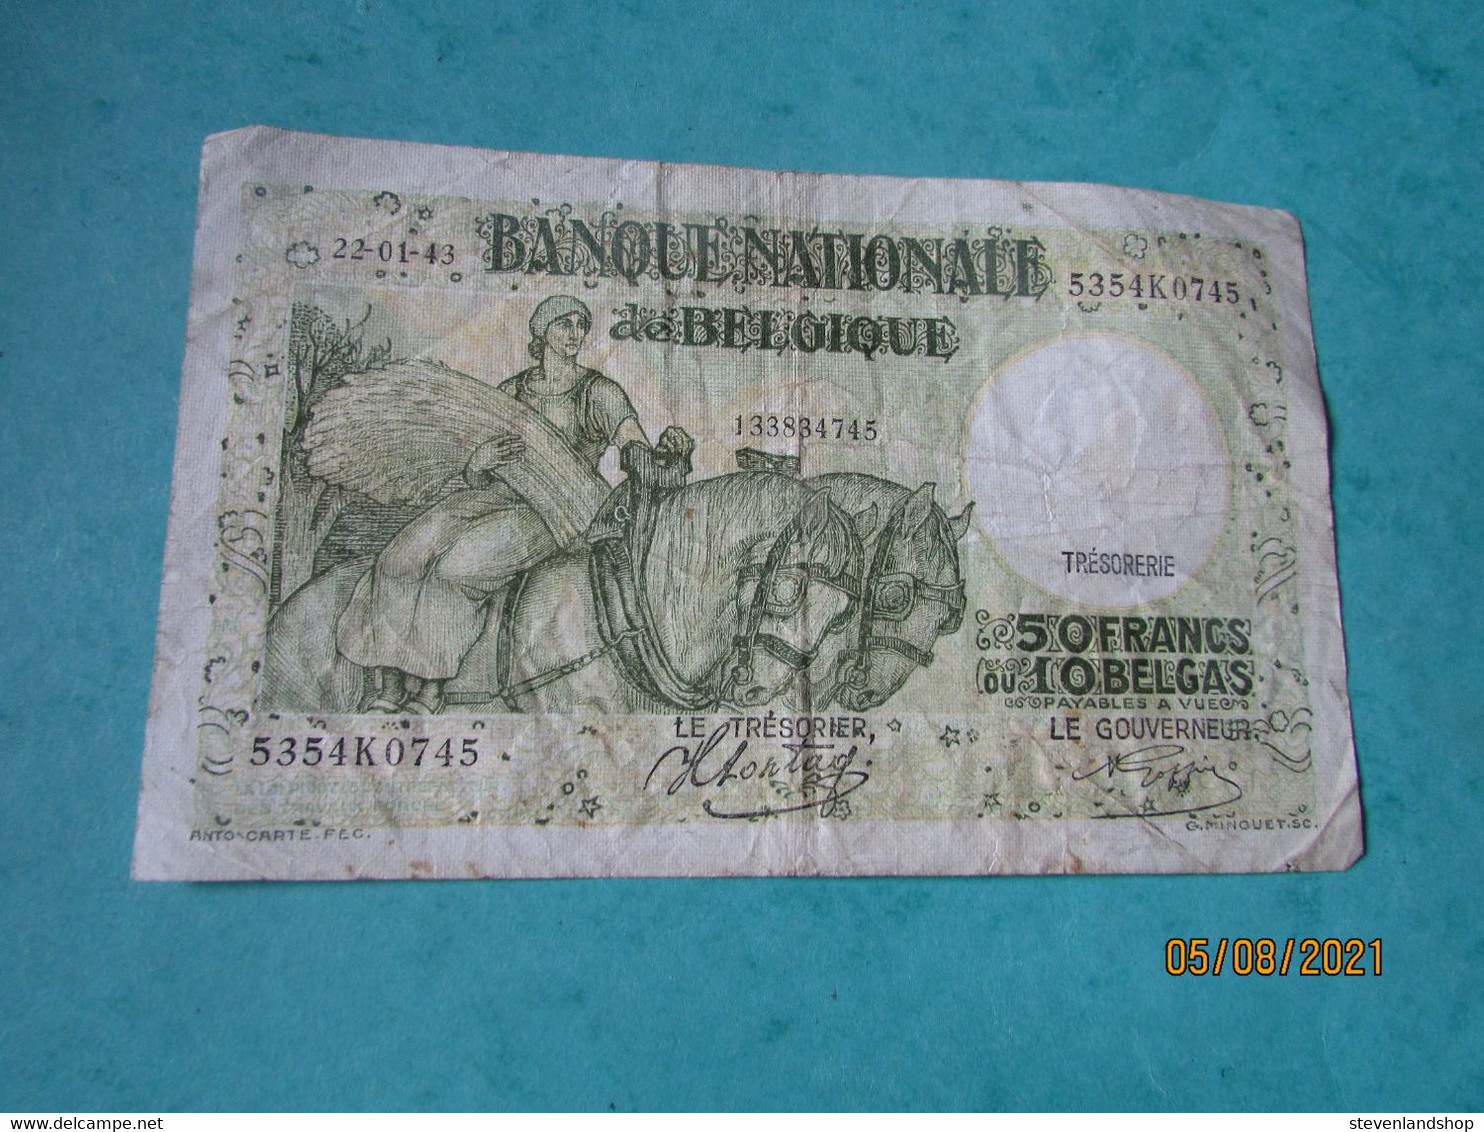 50 Frank Of 20 Belga, 1943 - 50 Francs